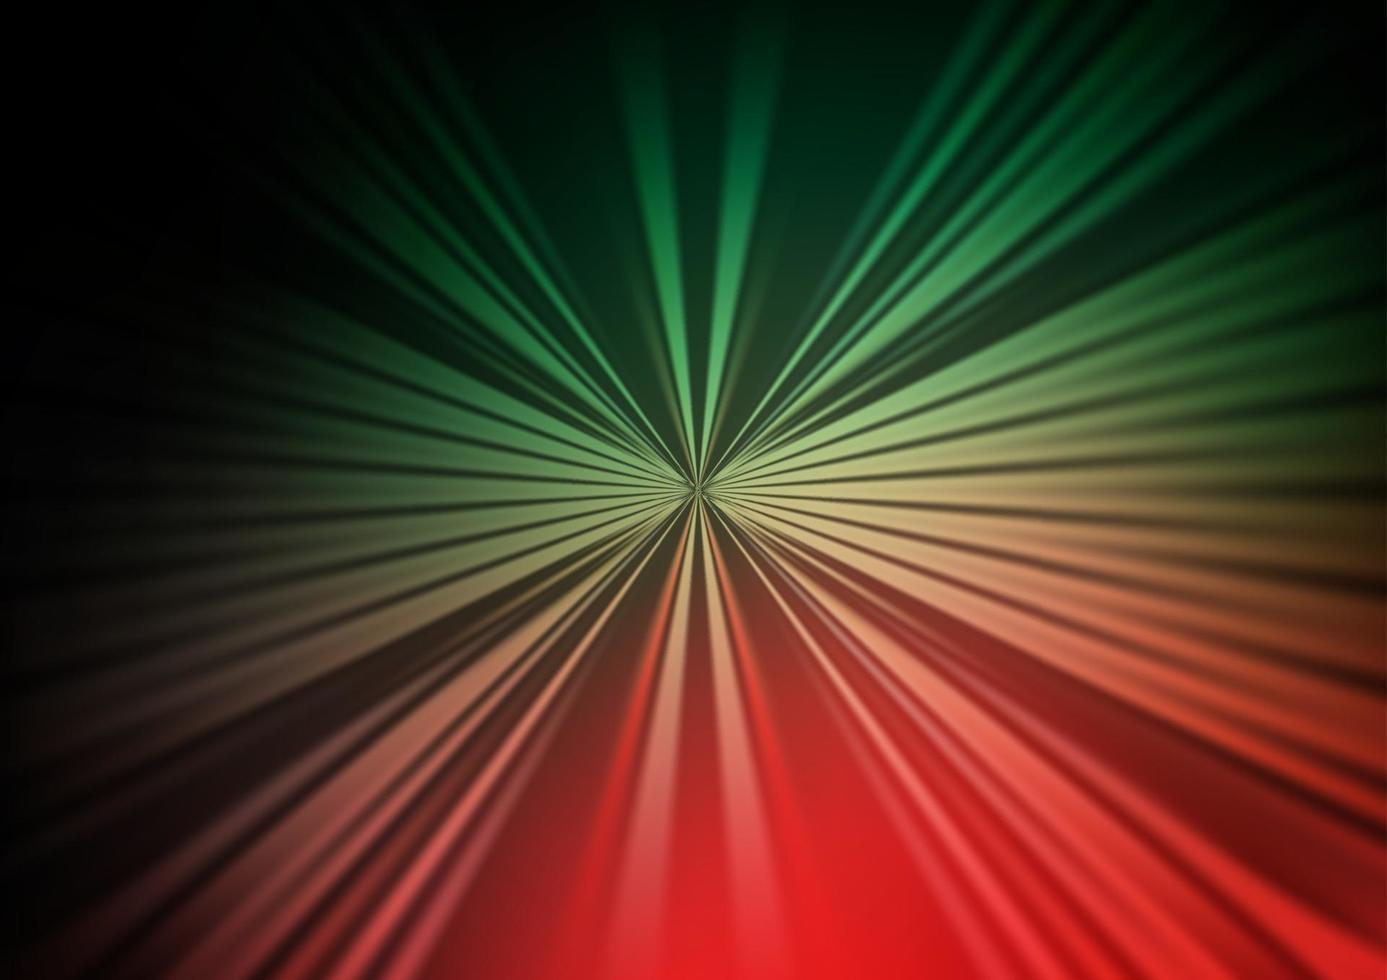 sfondo vettoriale verde scuro, rosso con linee rette.